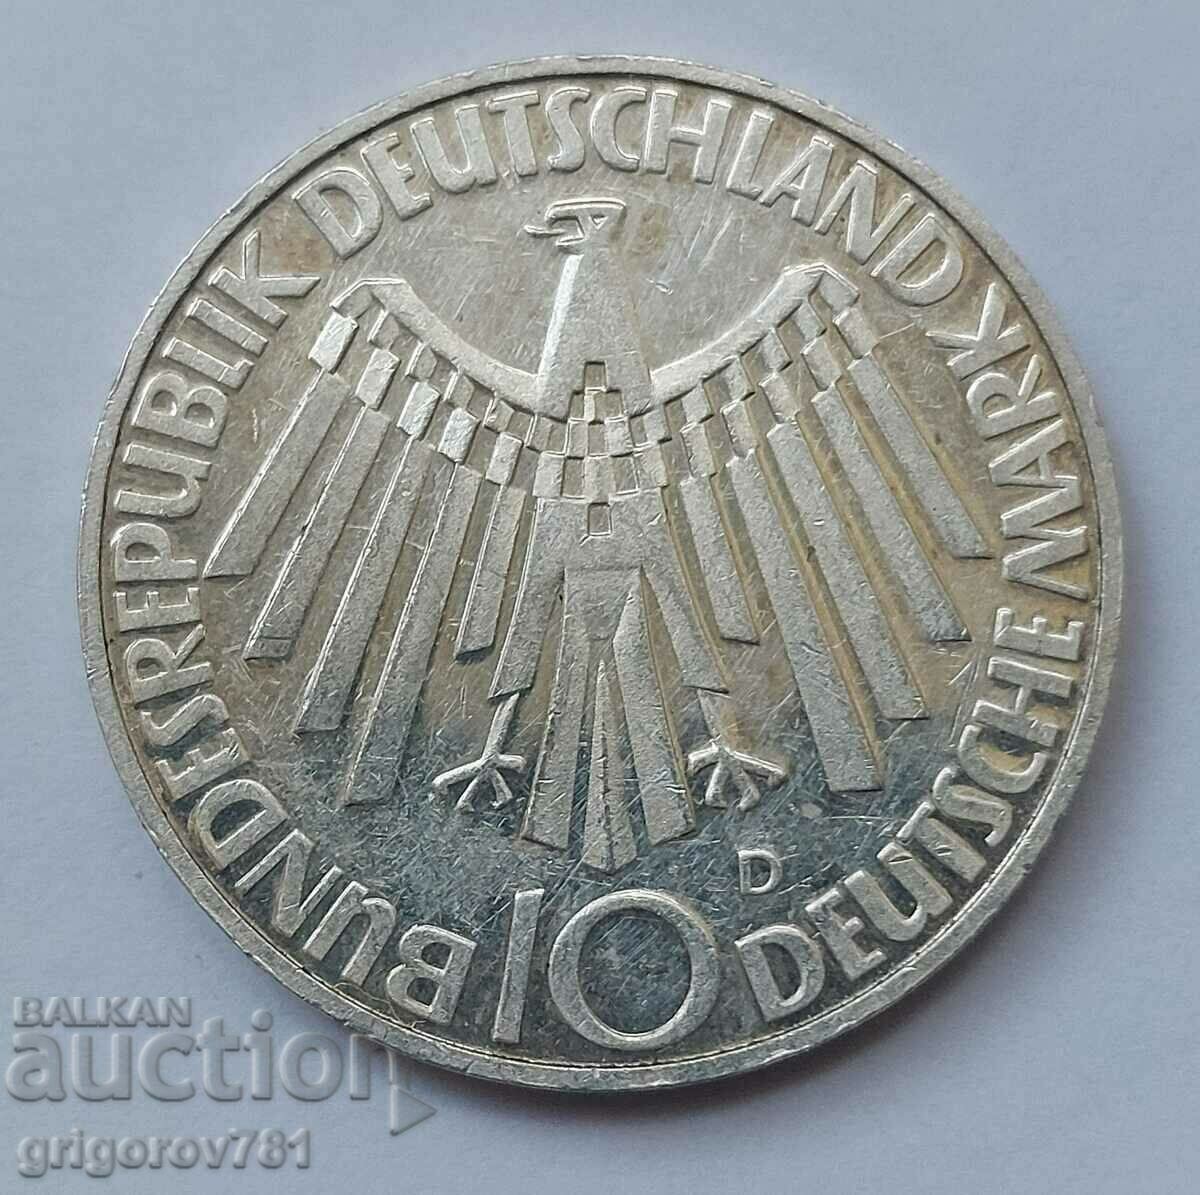 10 ασημένια μάρκα Γερμανία 1972 D - ασημένιο νόμισμα